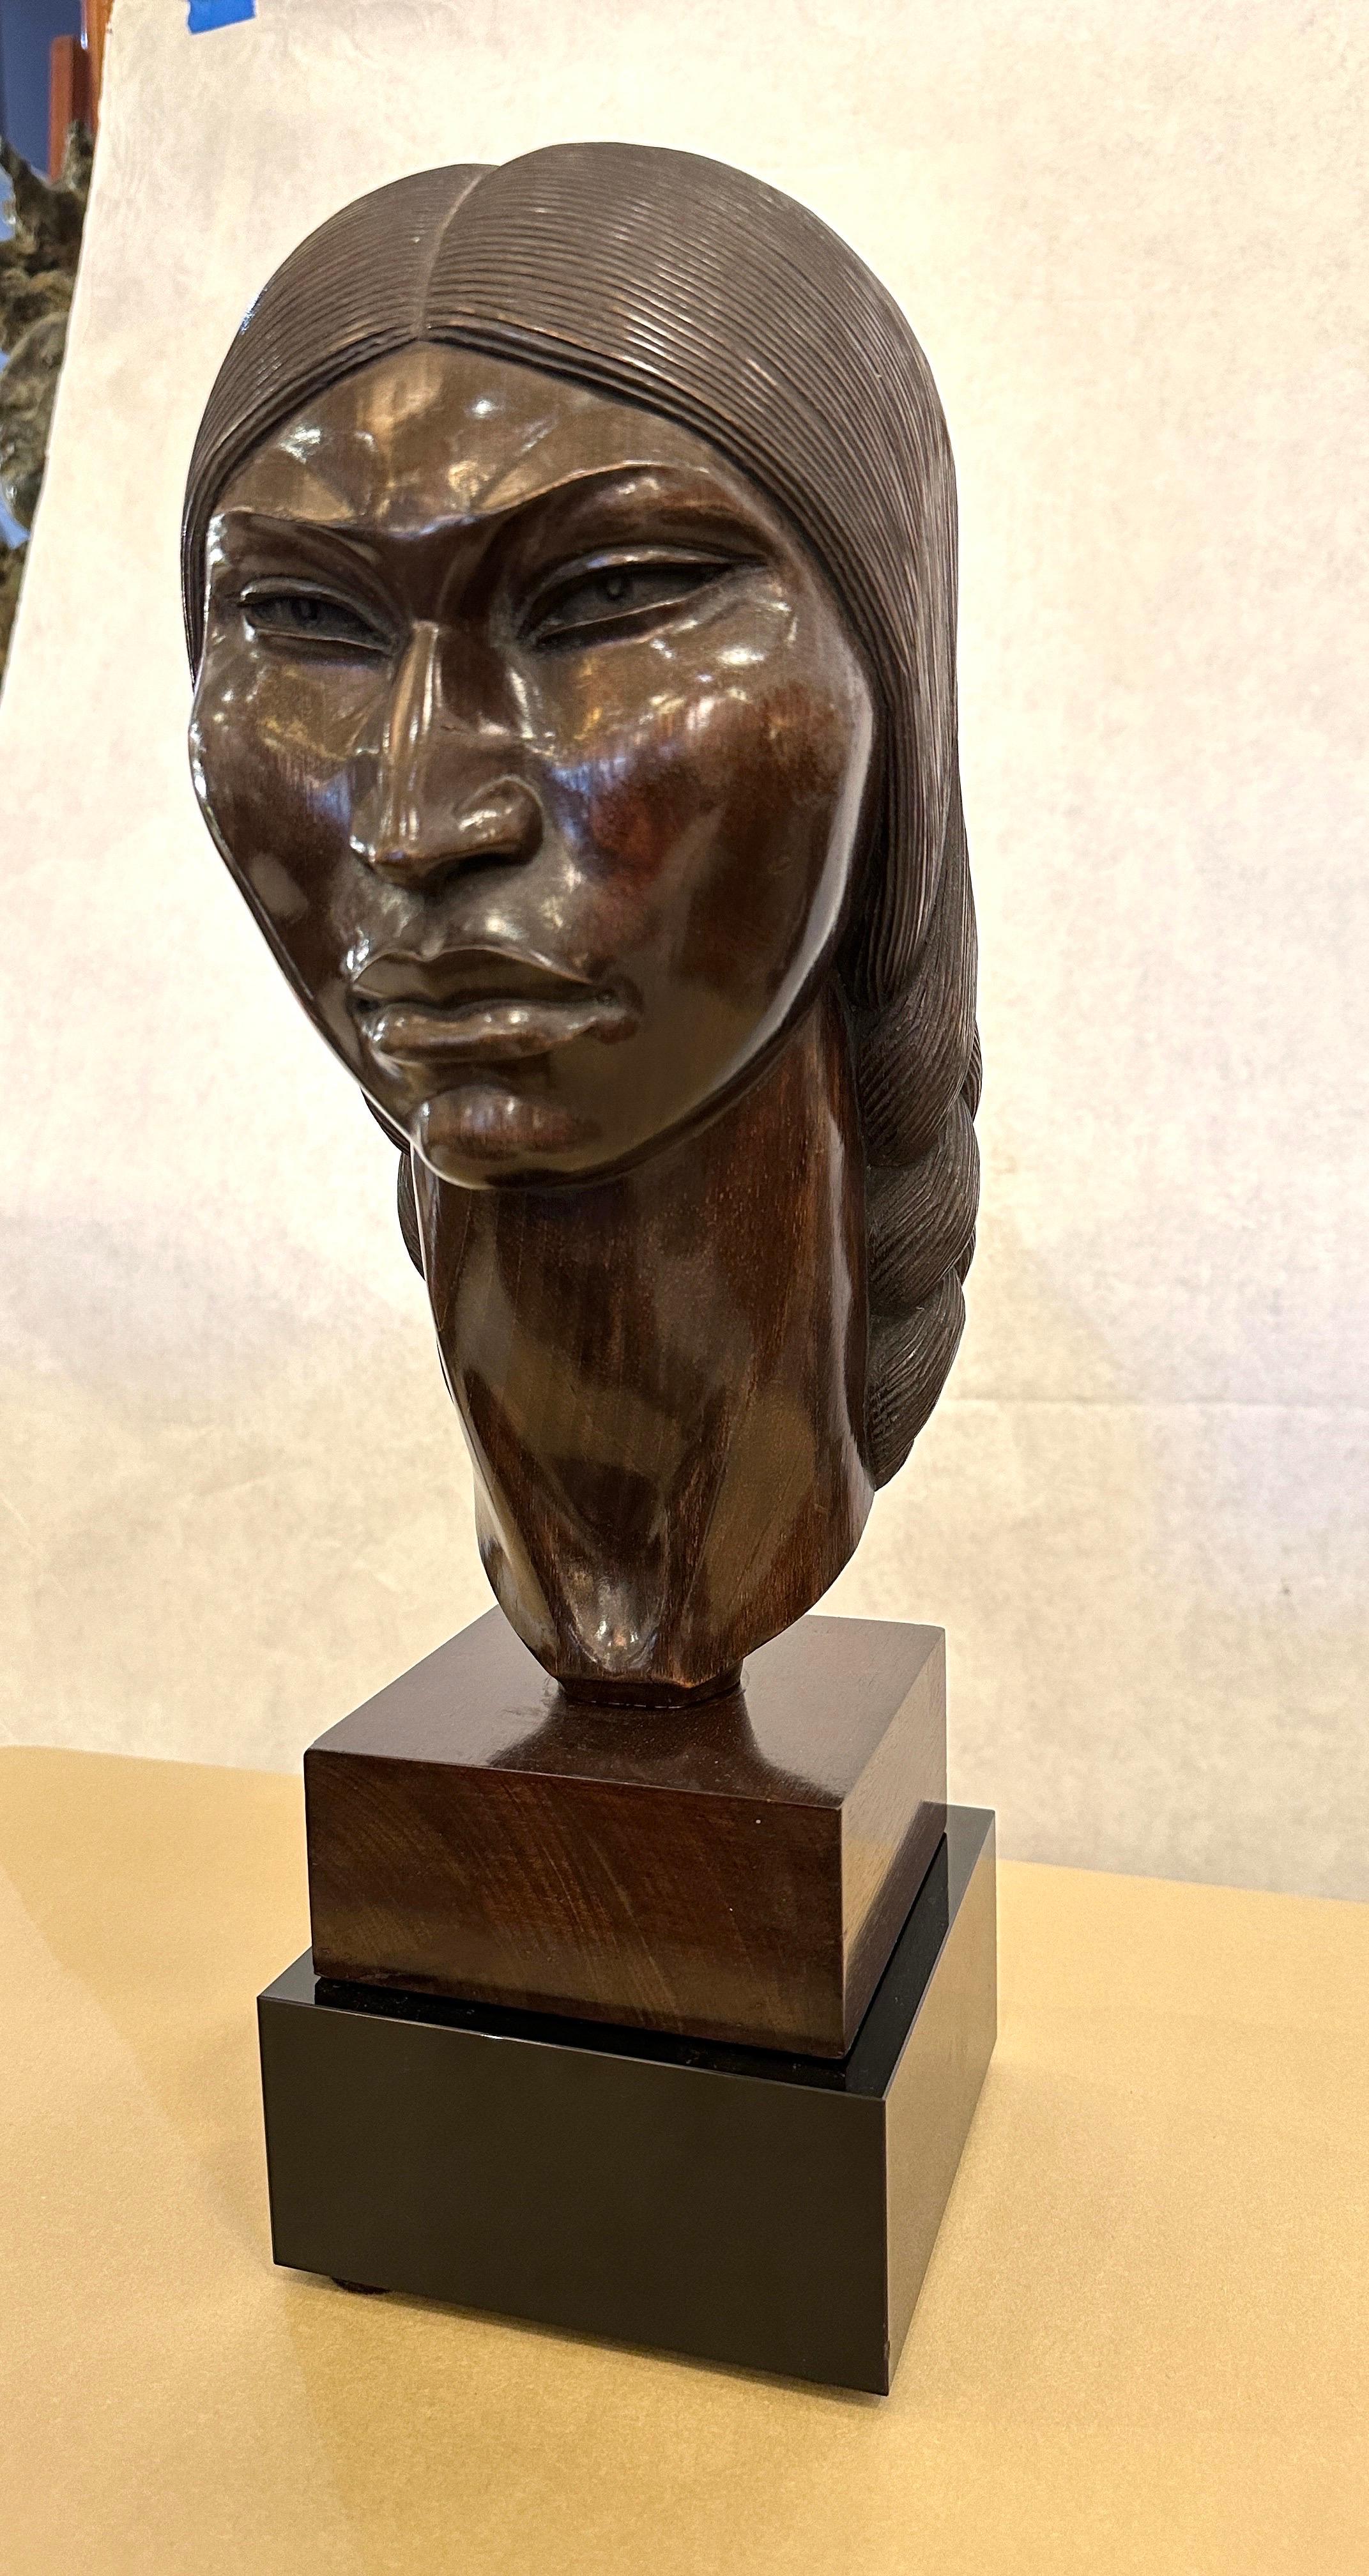 Diese wunderschön und aufwändig geschnitzte Vintage-Büste einer Inka-Kriegerin von SARAVIA. Dieses wunderbare dunkle Holz sitzt auf einem speziell angefertigten Sockel aus schwarzem Glas (nicht angebracht). Die Gesichtszüge und Haare sind